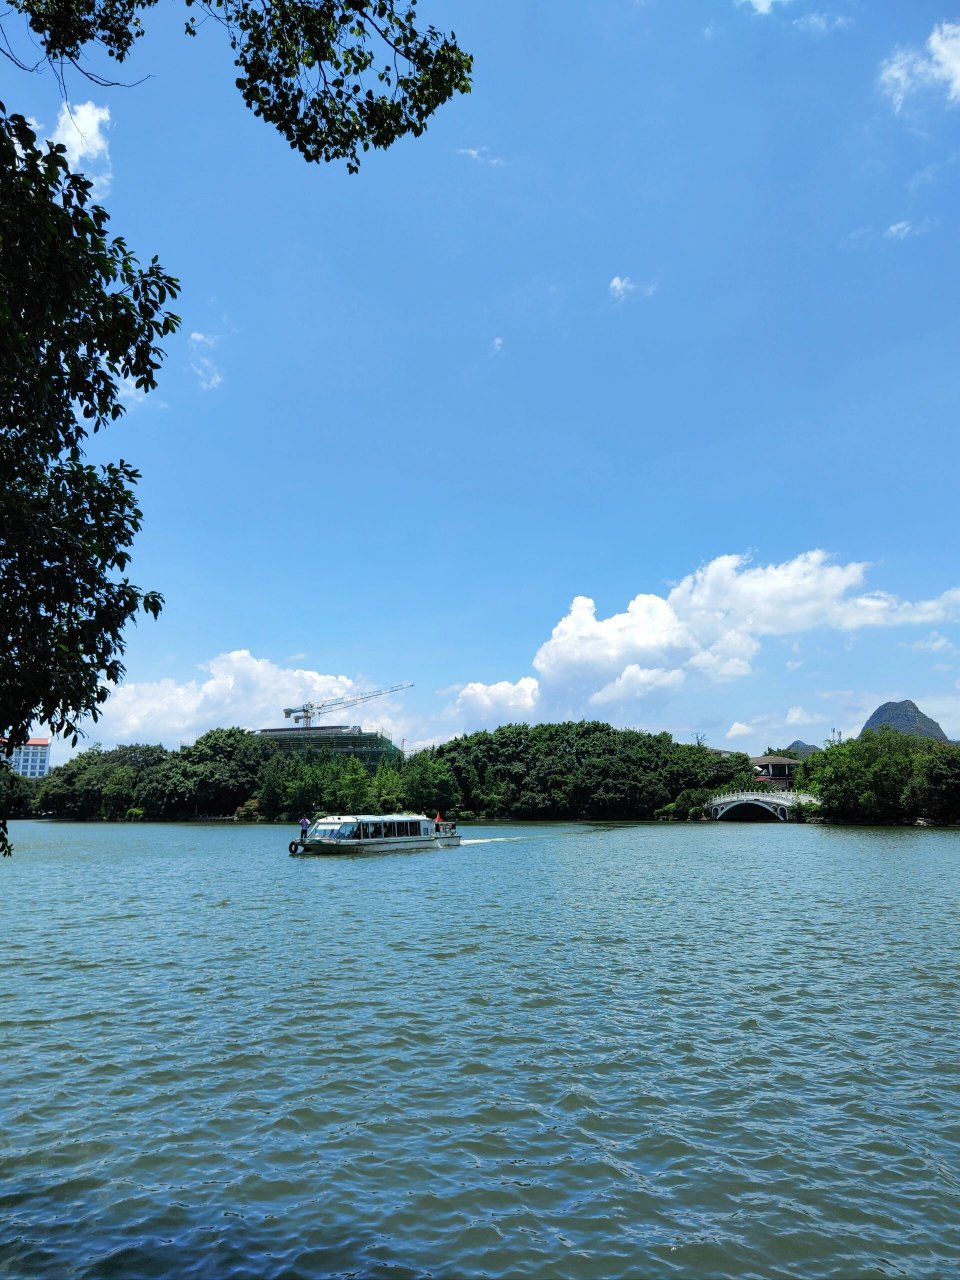 桂林榕湖景区图片图片